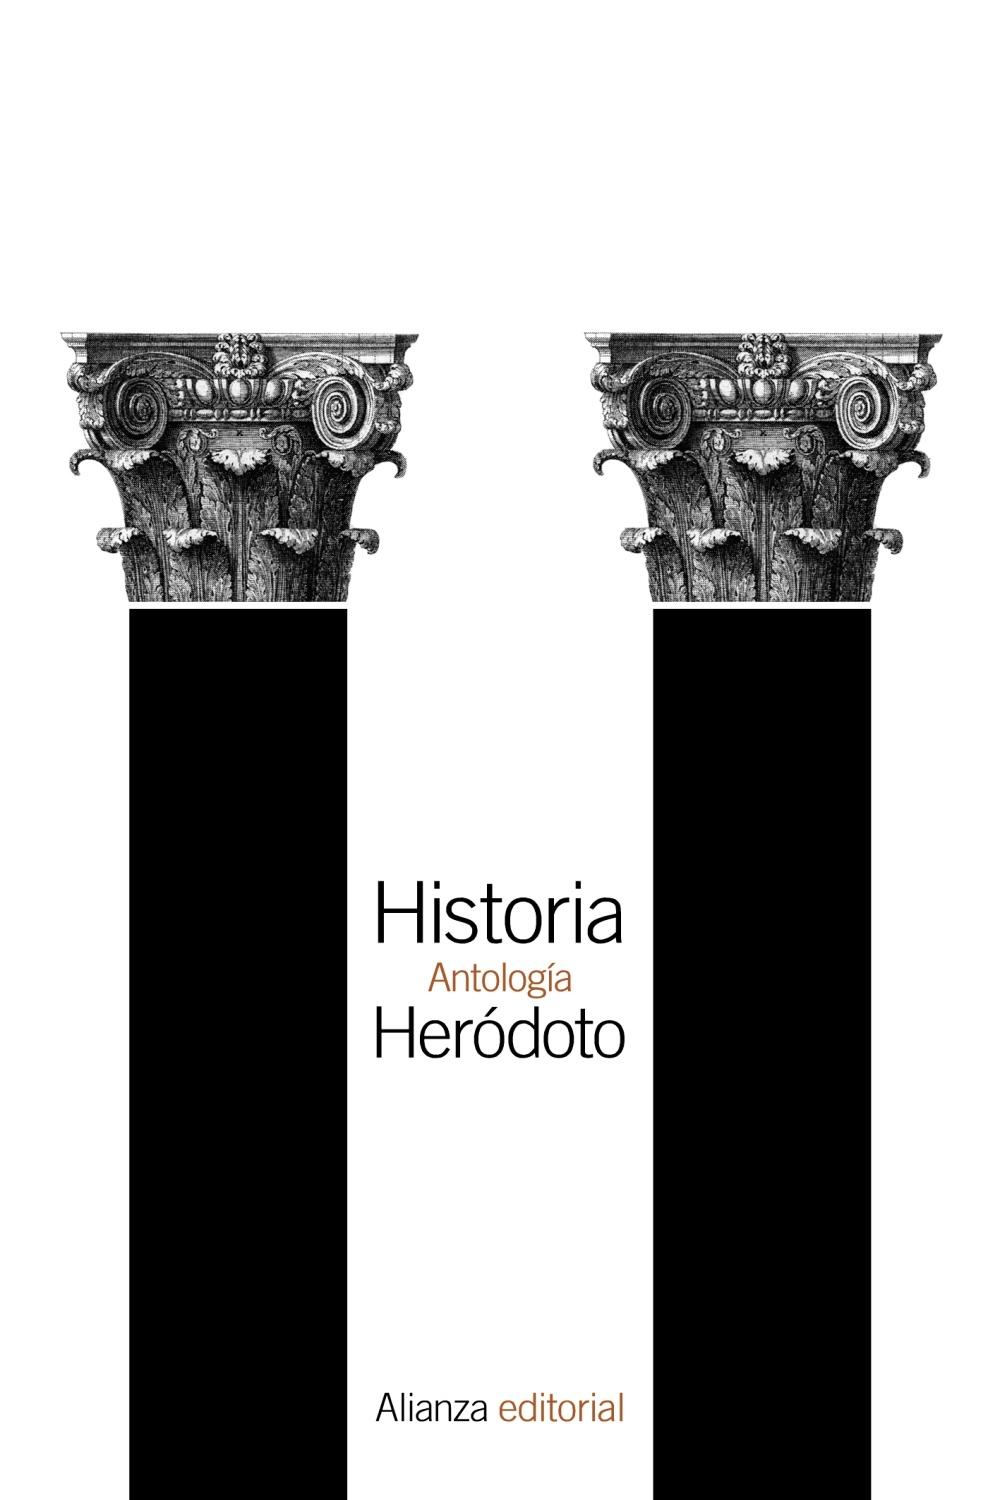 Historia "Antología"